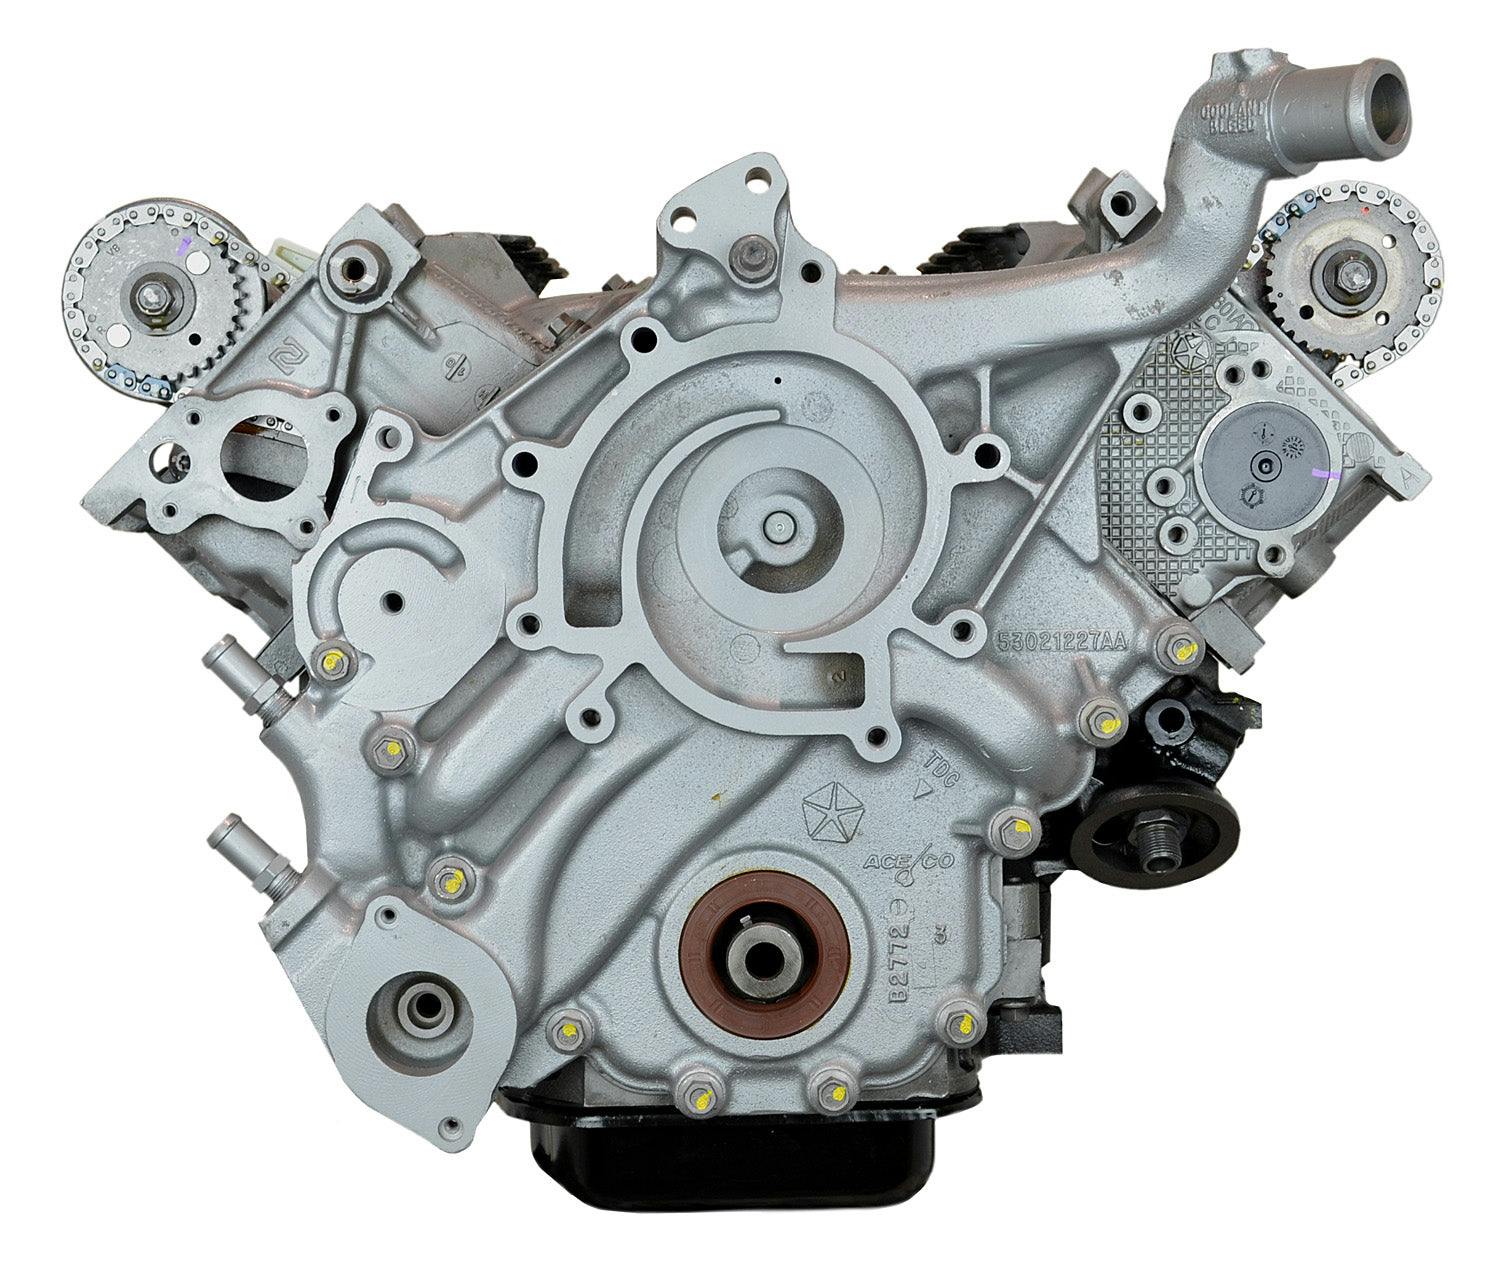 4.7L V8 Engine for 2005-2008 Dodge Dakota, Ram 1500/Mitsubishi Raider